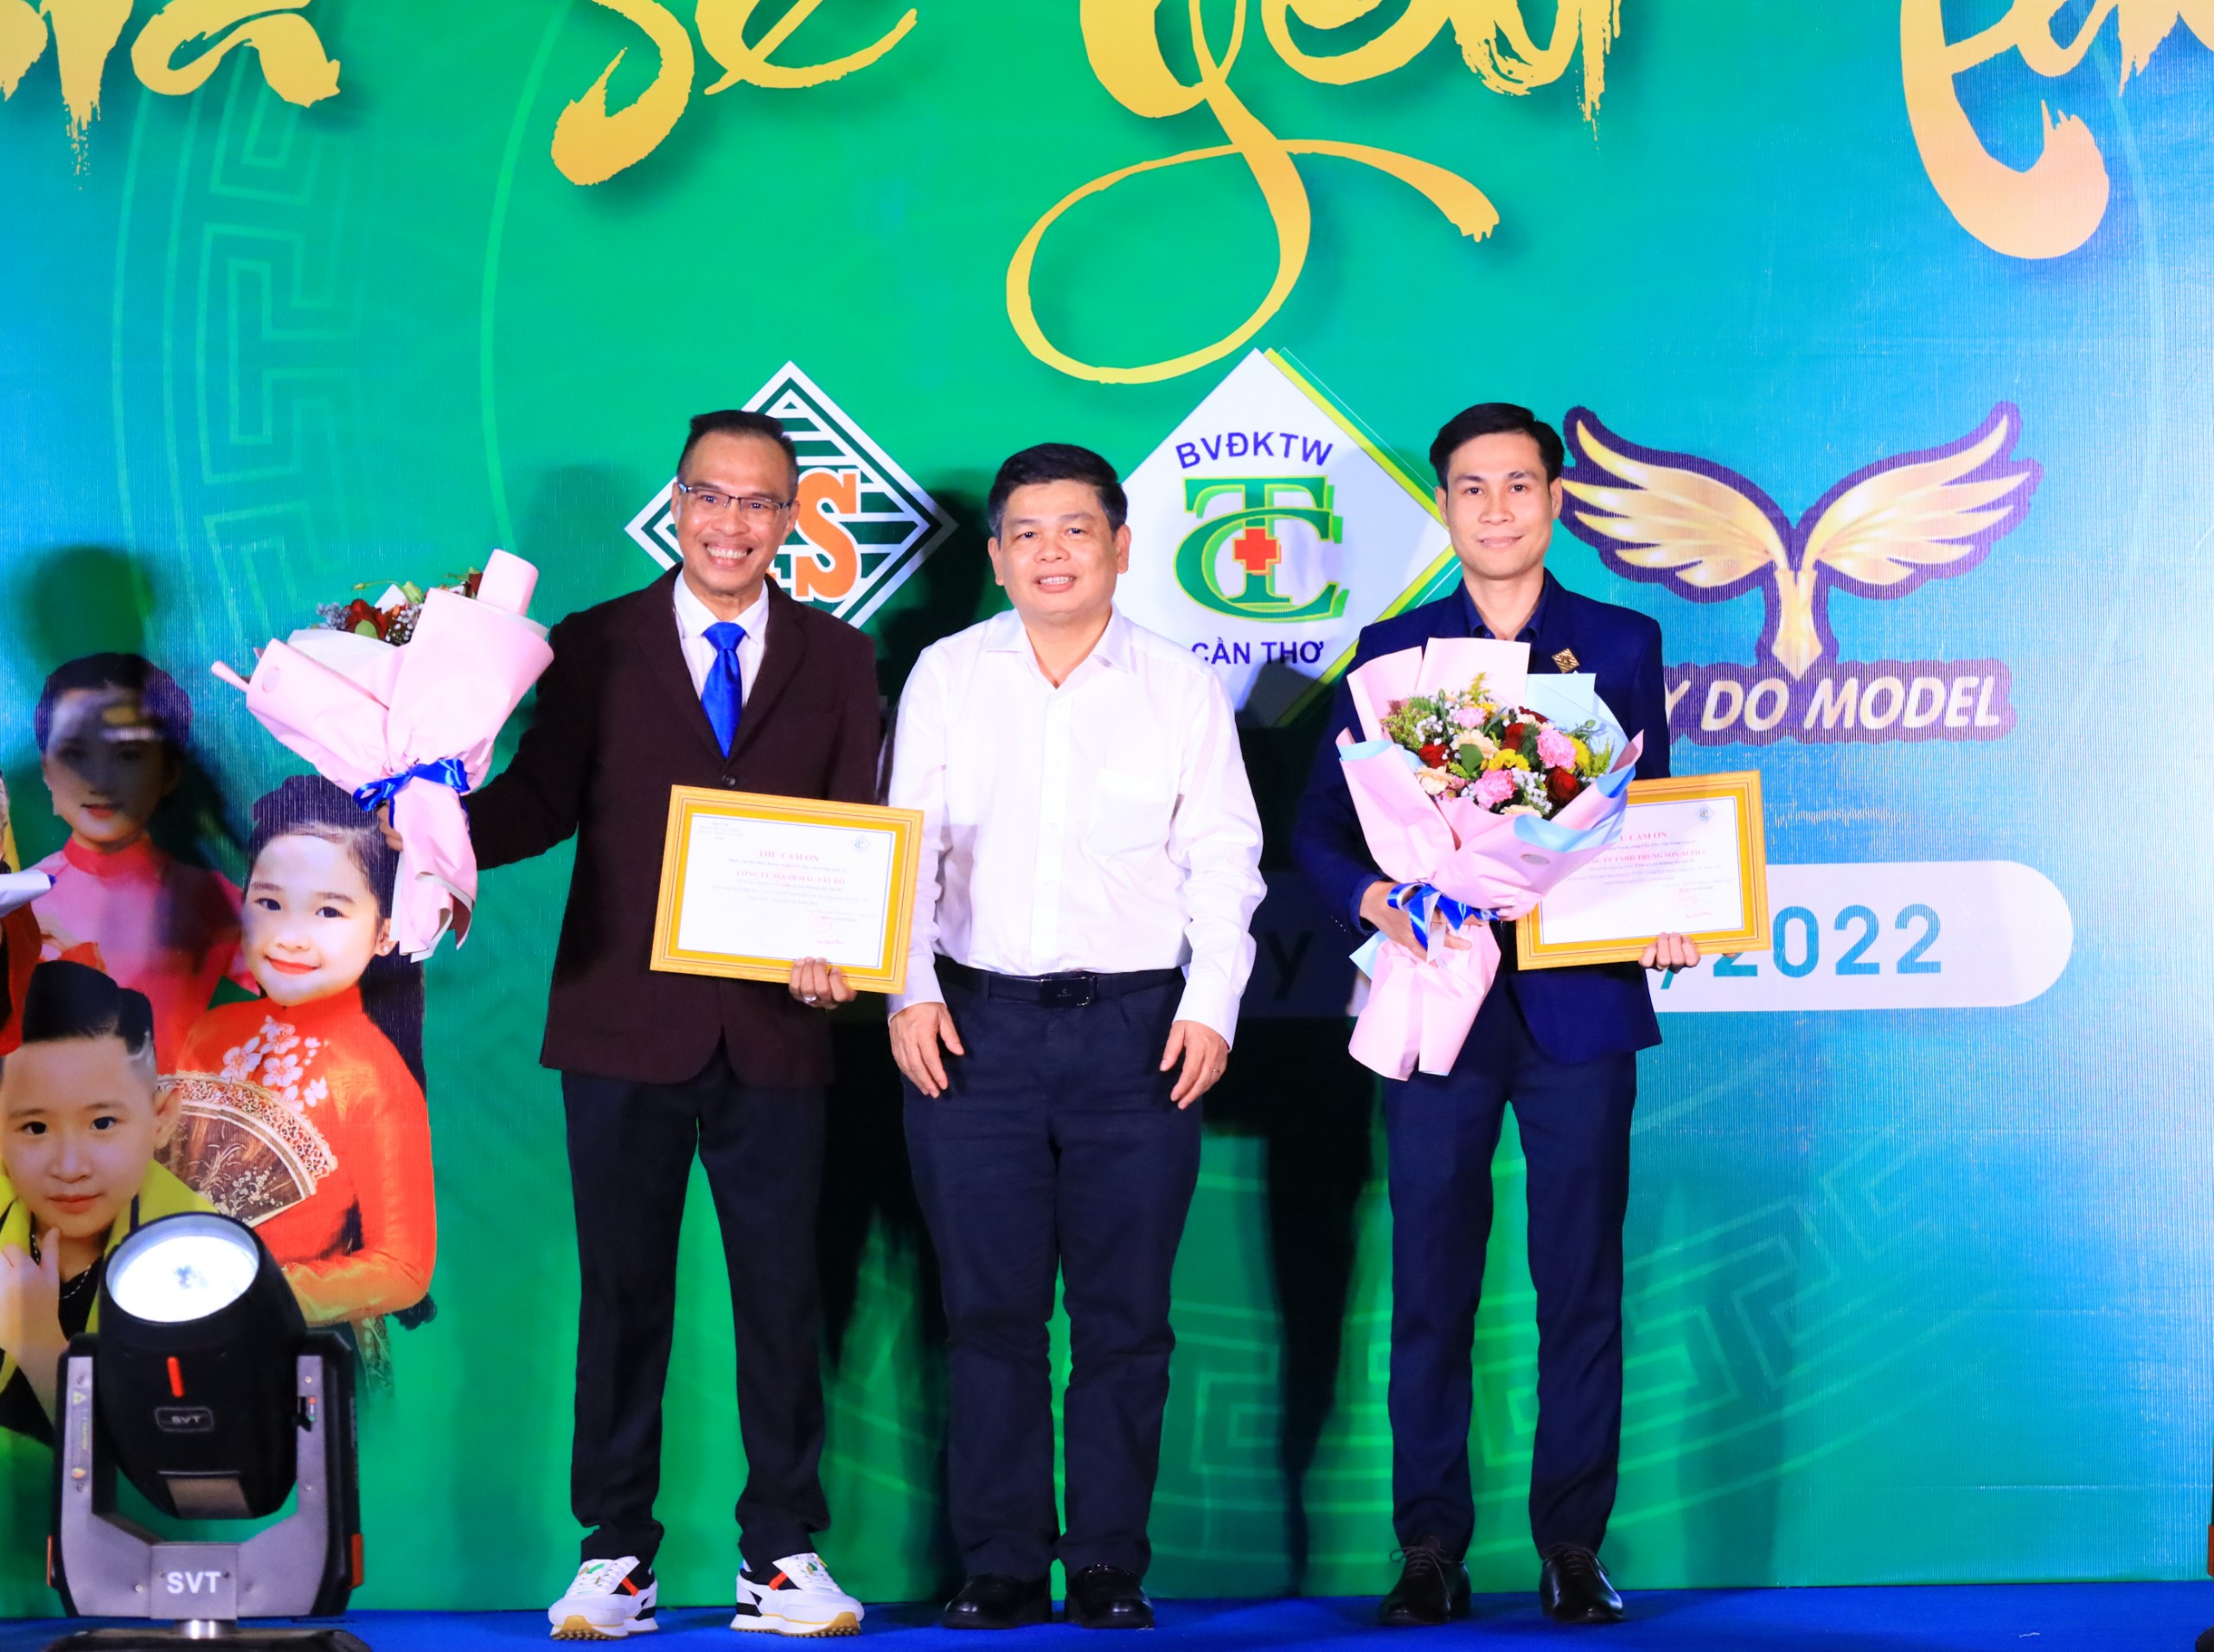 BS.CK2 Phạm Thanh Phong – Phó Giám đốc Bệnh viện Đa khoa trung ương Cần Thơ tặng hoa cho các đơn vị phối hợp tổ chức chương trình.